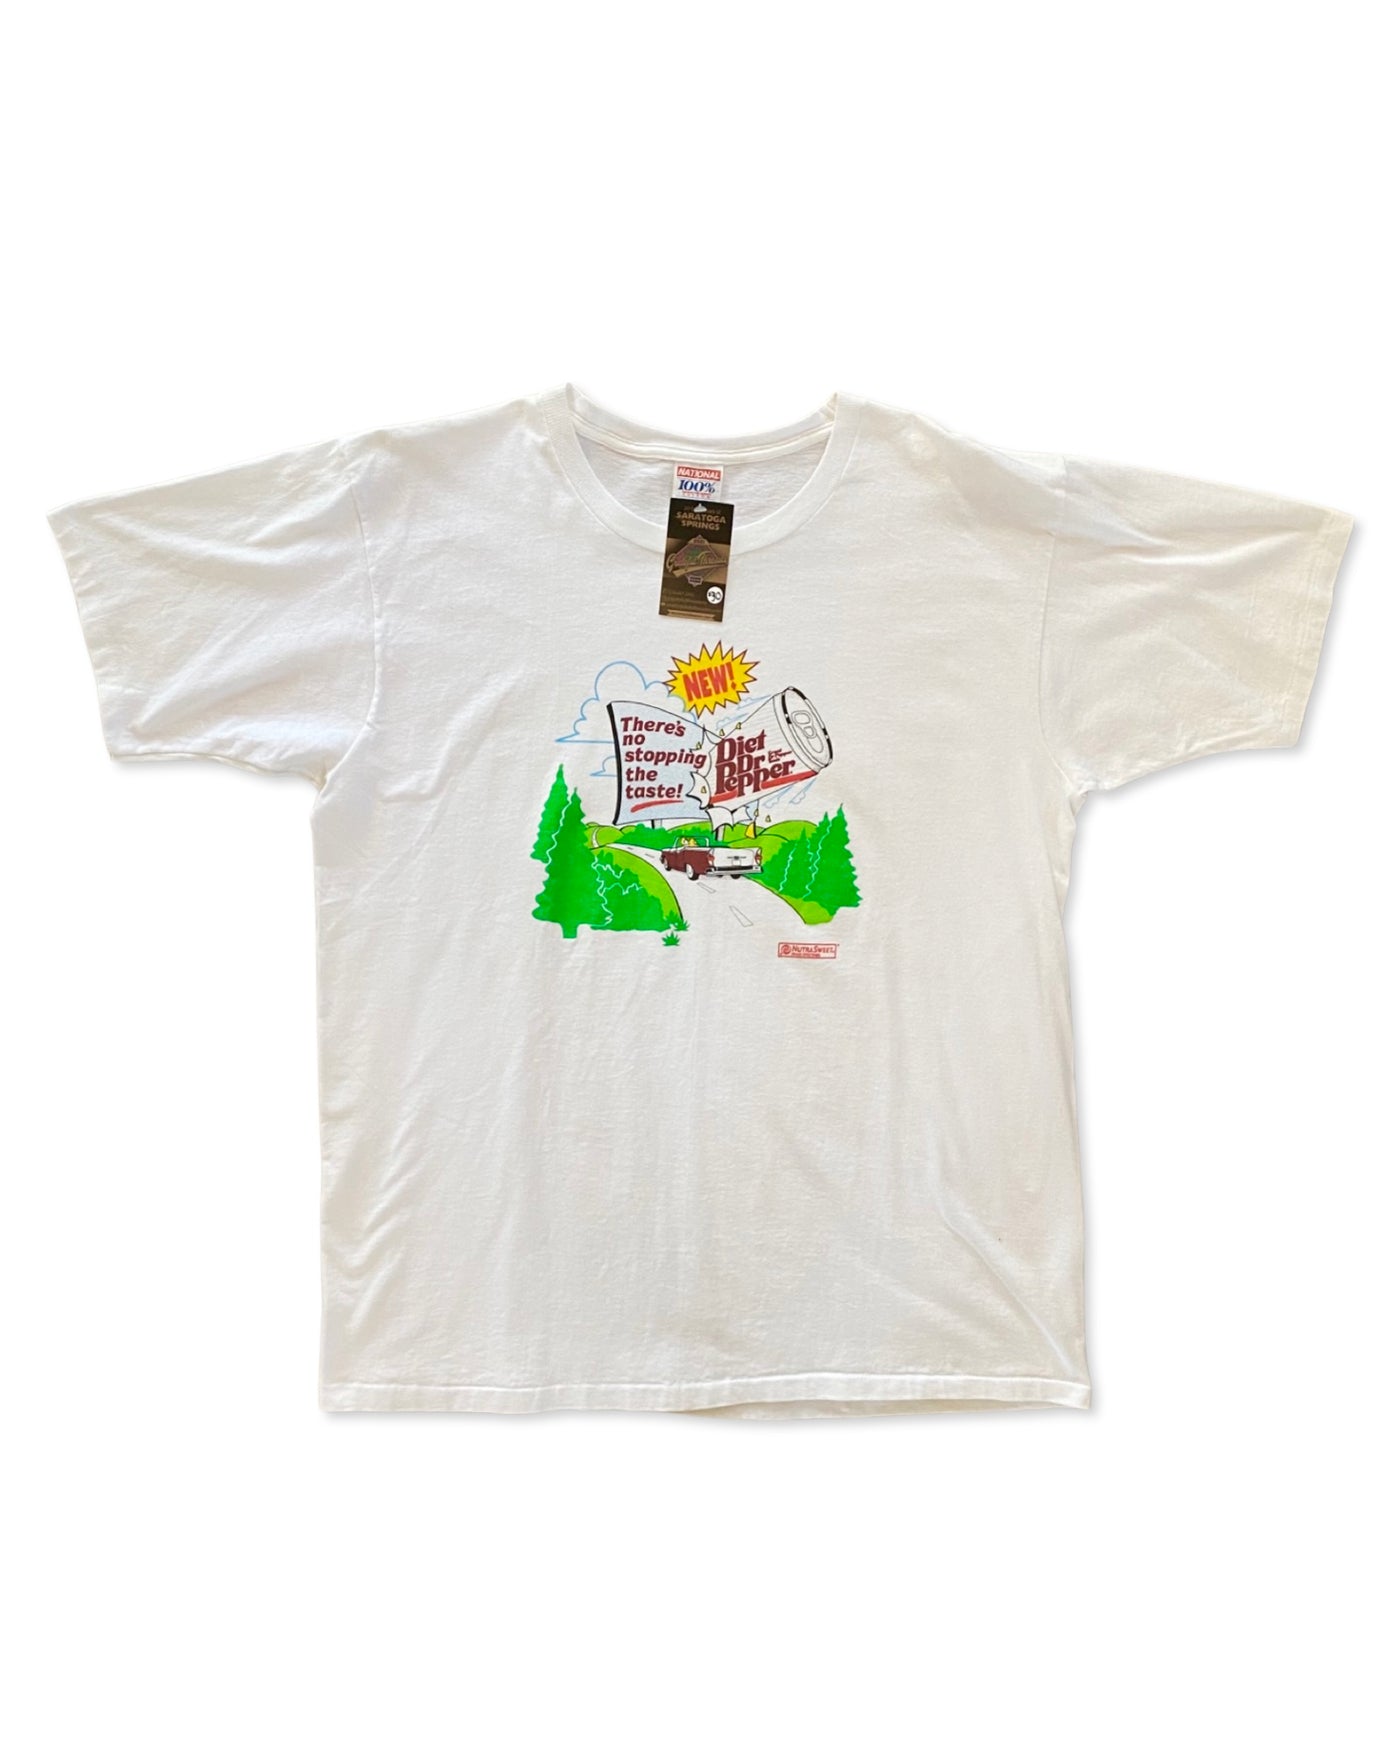 Vintage Dr. Pepper Promo T-Shirt